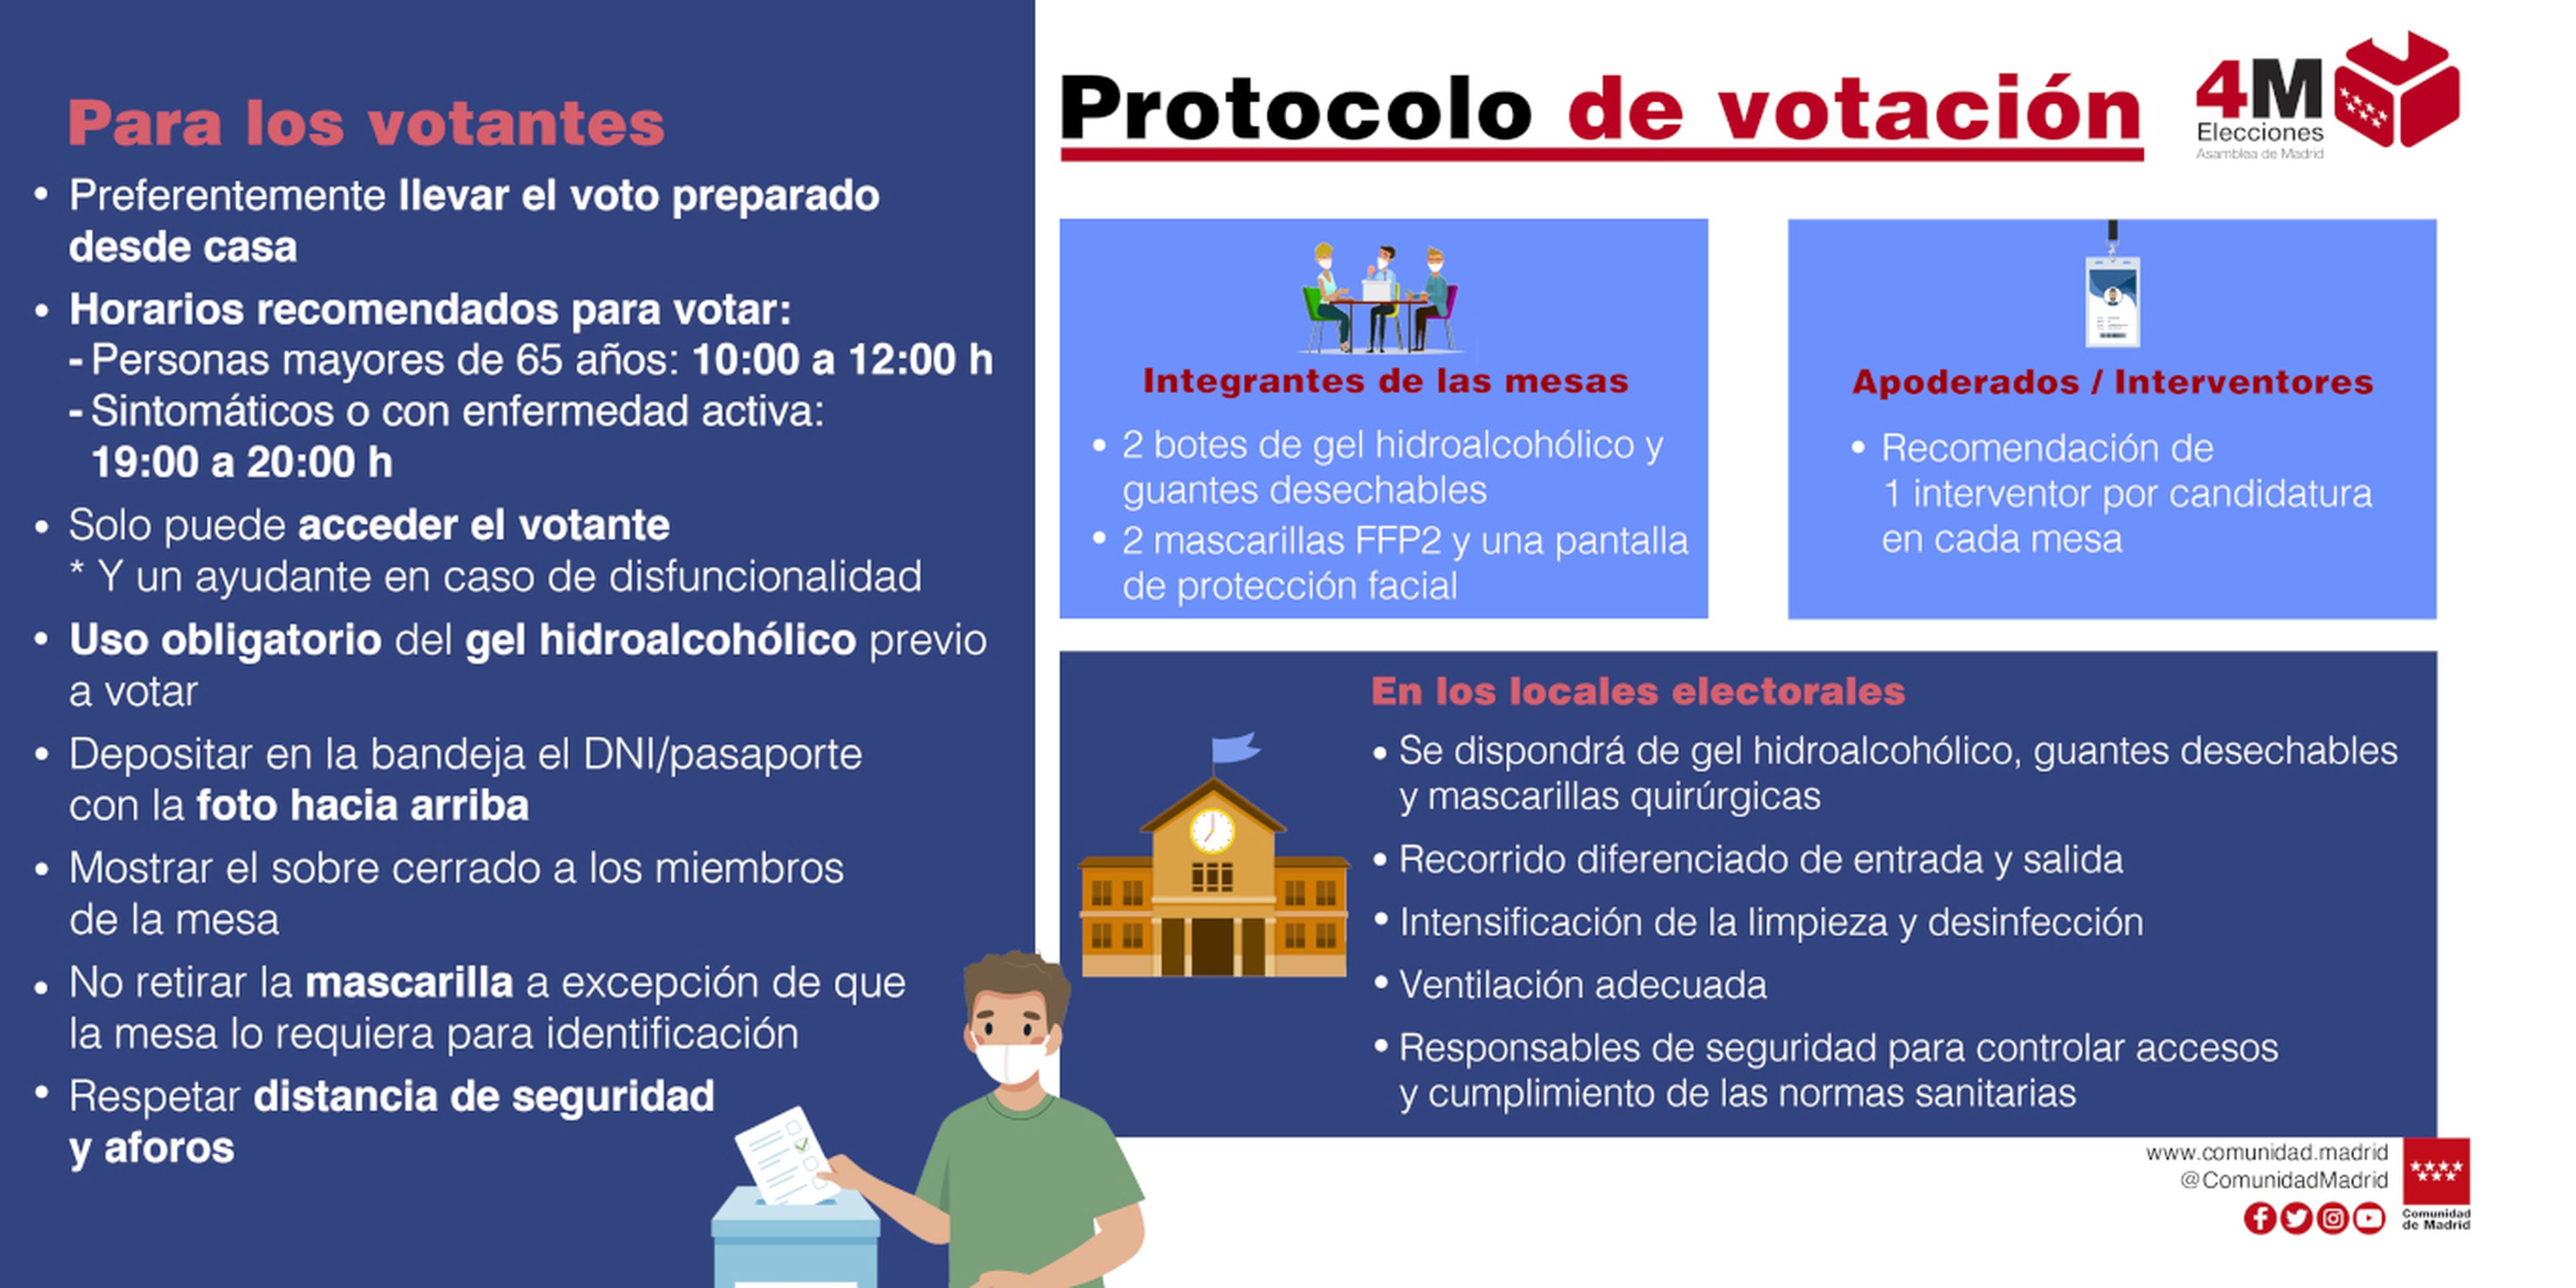 Recomendaciones del protocolo para votar en la Comunidad de Madrid